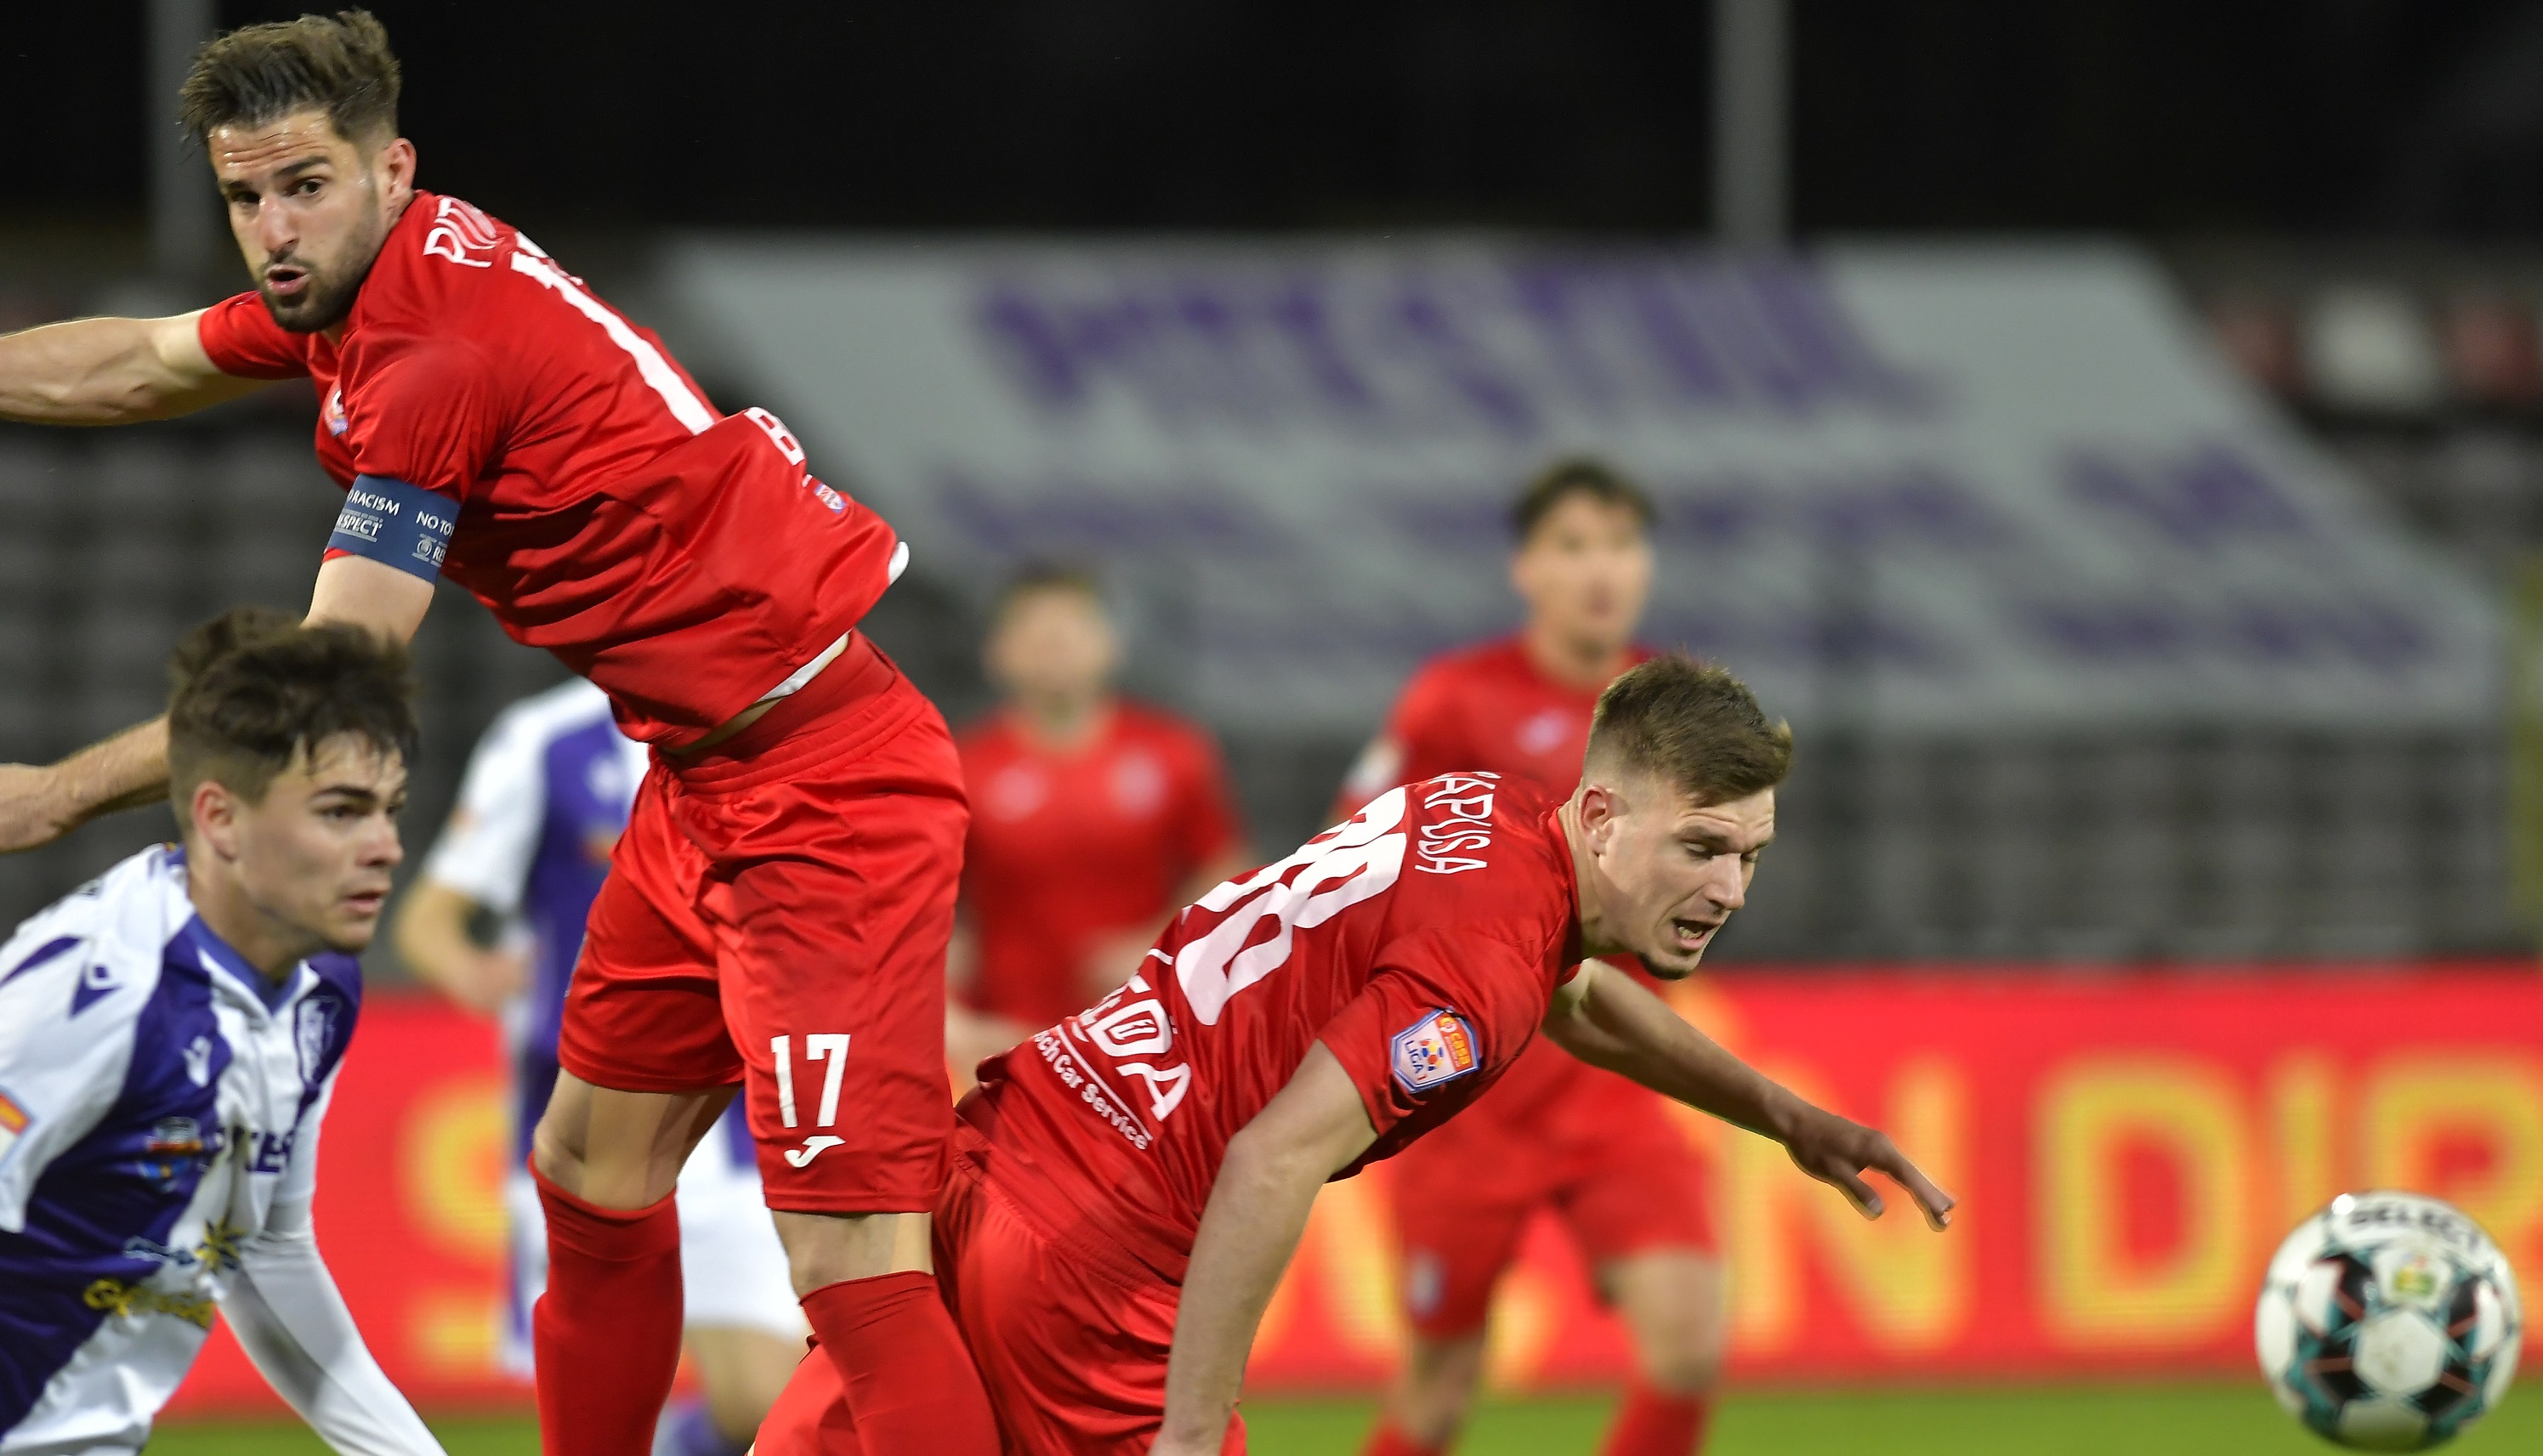 FC Argeș - Chindia 3-1. Trupa lui Săndoi a fost doar trei minute în play-off. Malele și Năstăsie, eroii gazdelor